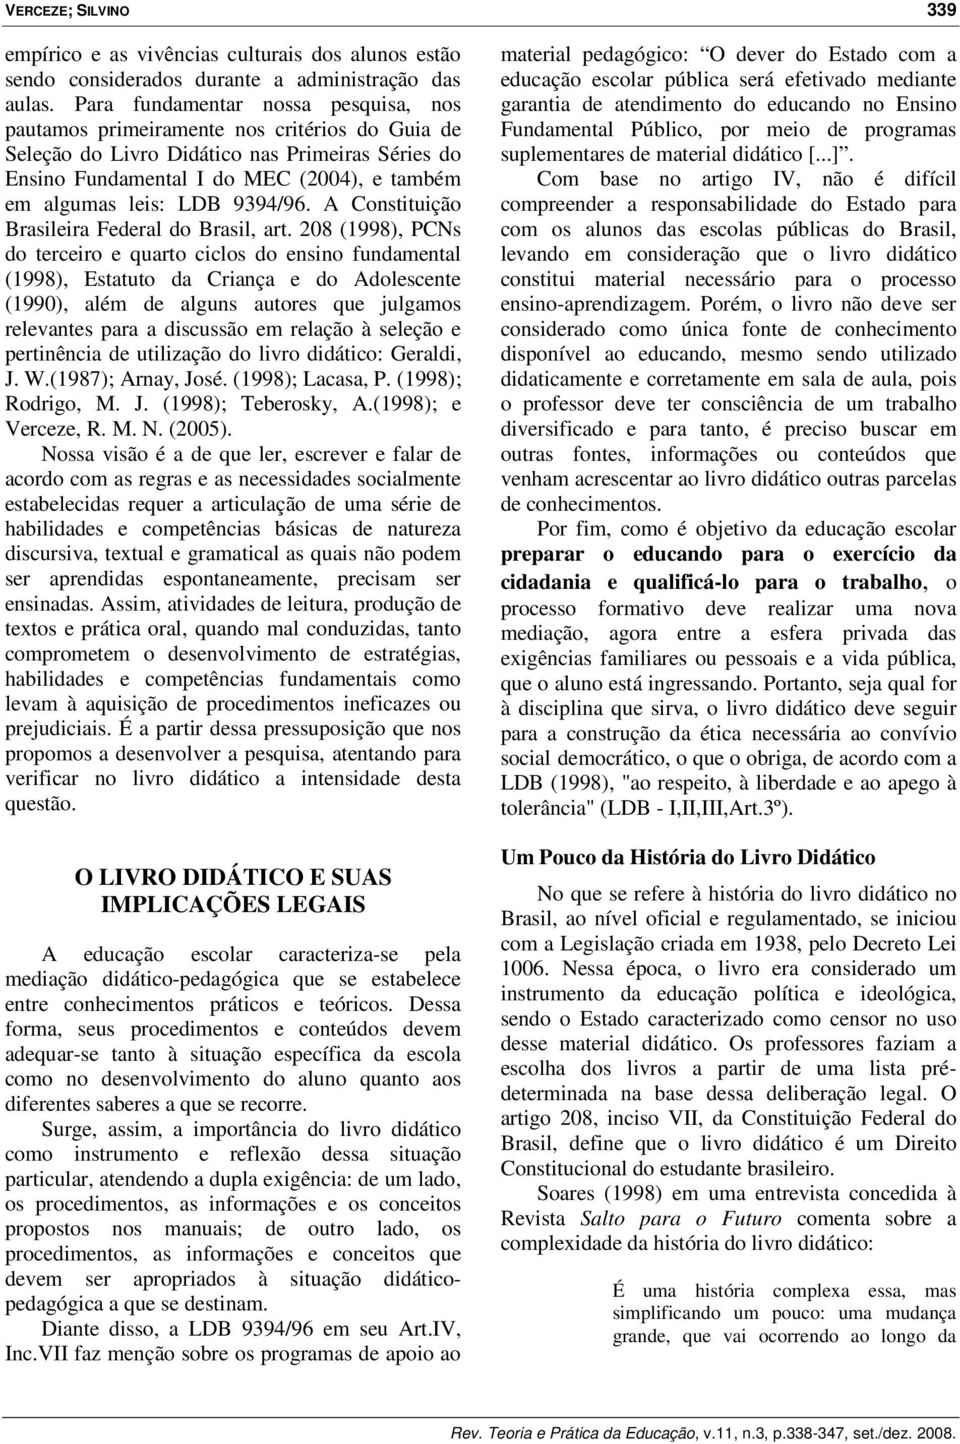 LDB 9394/96. A Constituição Brasileira Federal do Brasil, art.